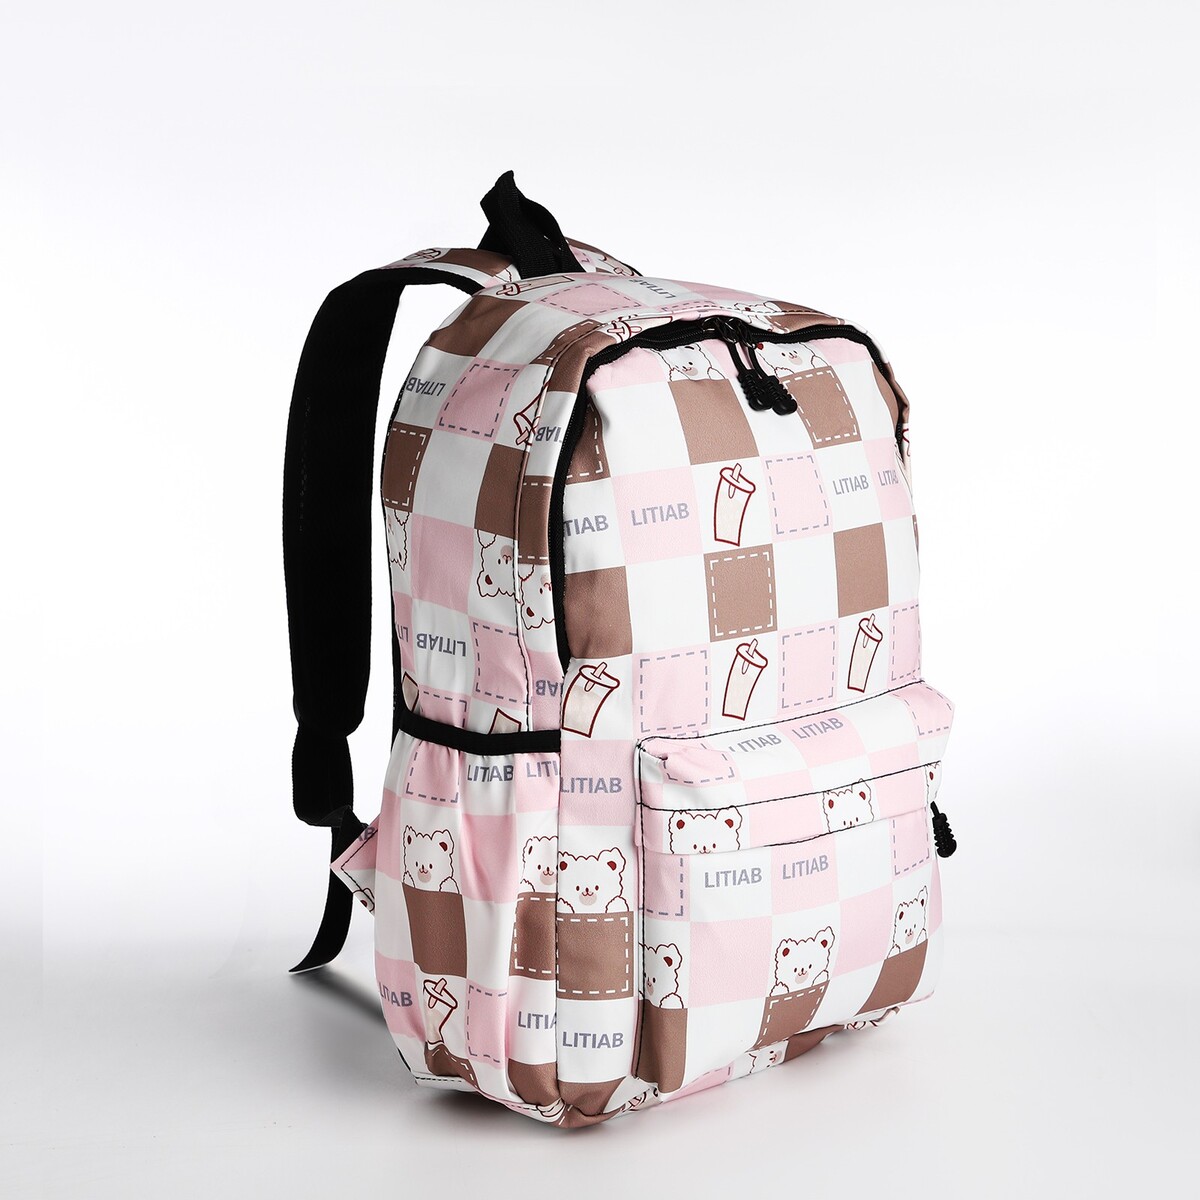 Рюкзак молодежный из текстиля, 3 кармана, цвет бежевый/розовый рюкзак школьный из текстиля 3 кармана белый бежевый